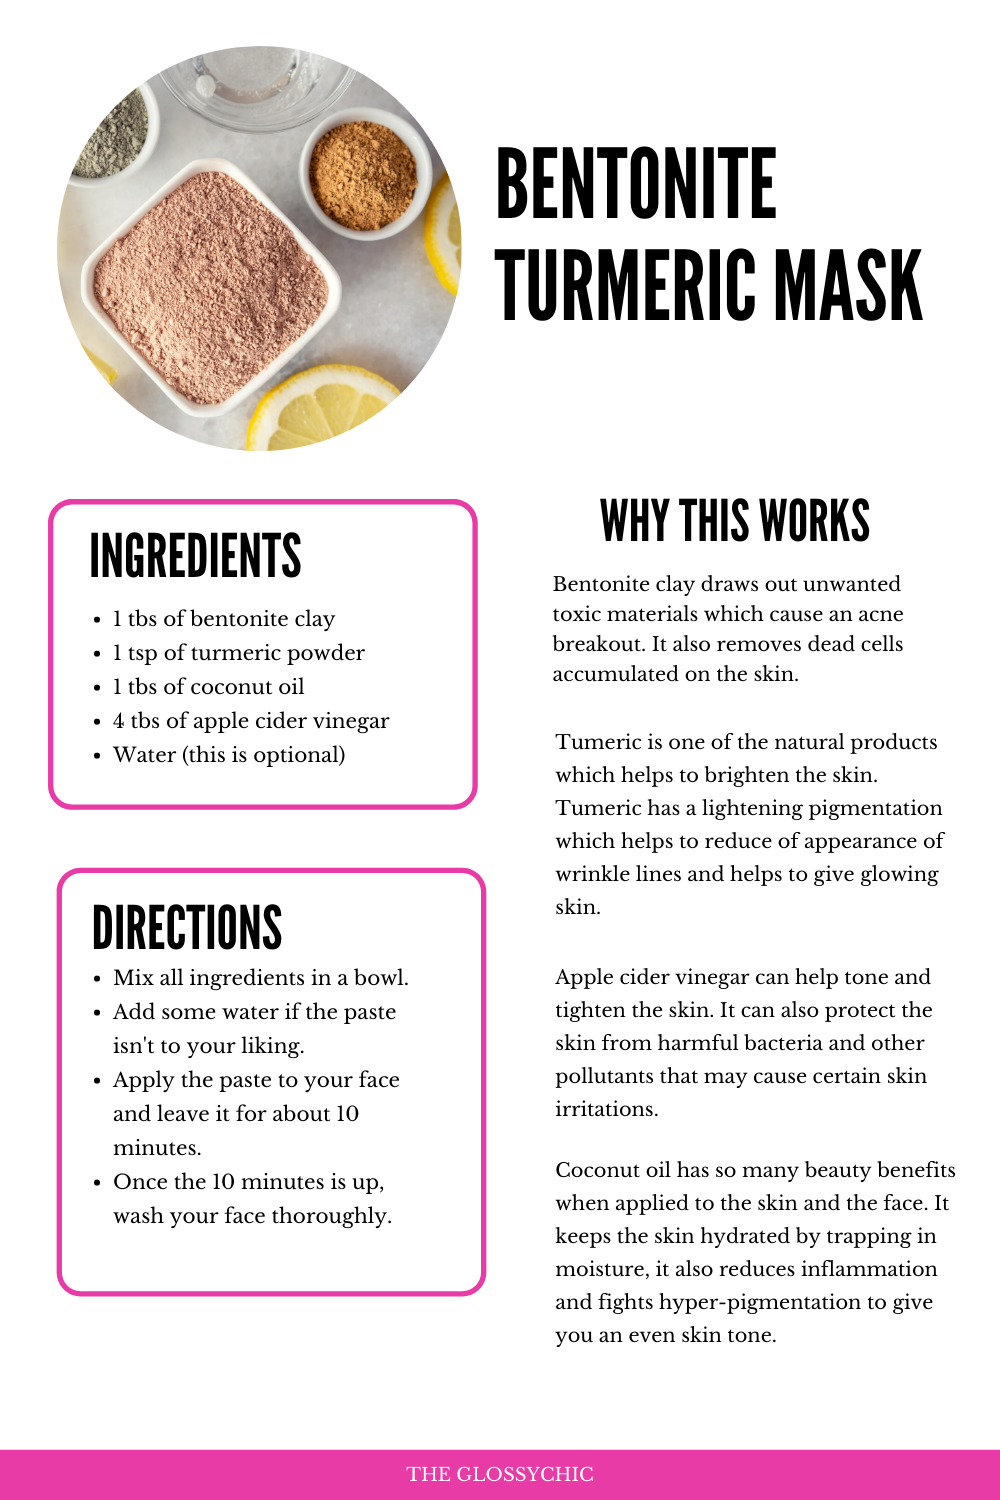 Bentonite turmeric mask